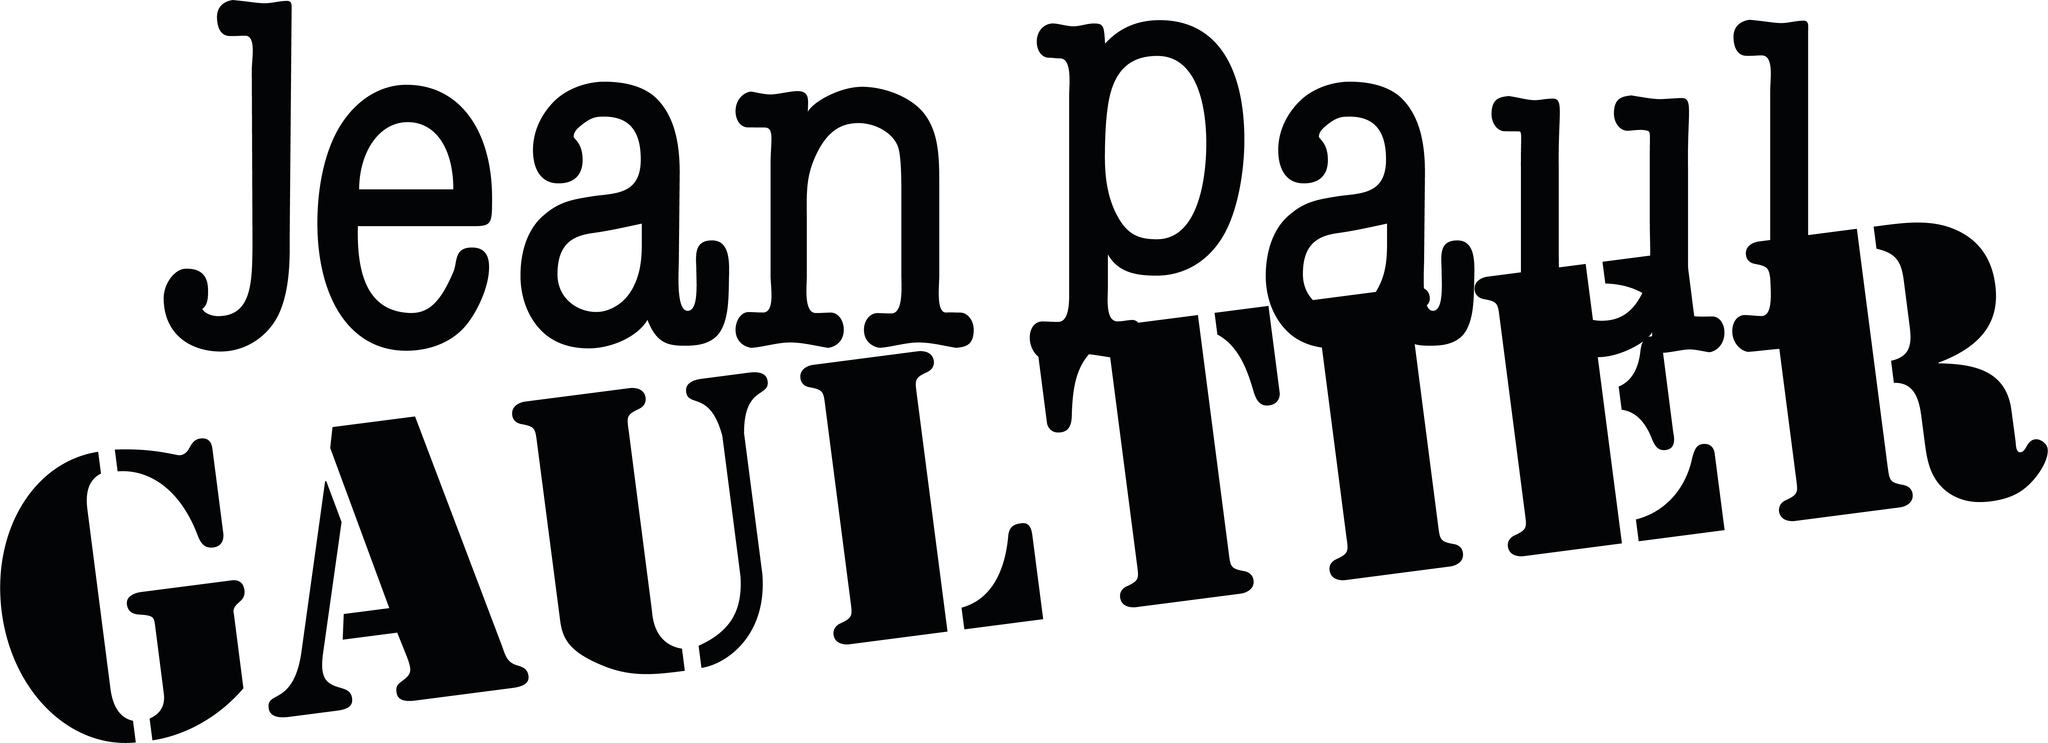 Jean Paul Gaultier | Perfume Scandal